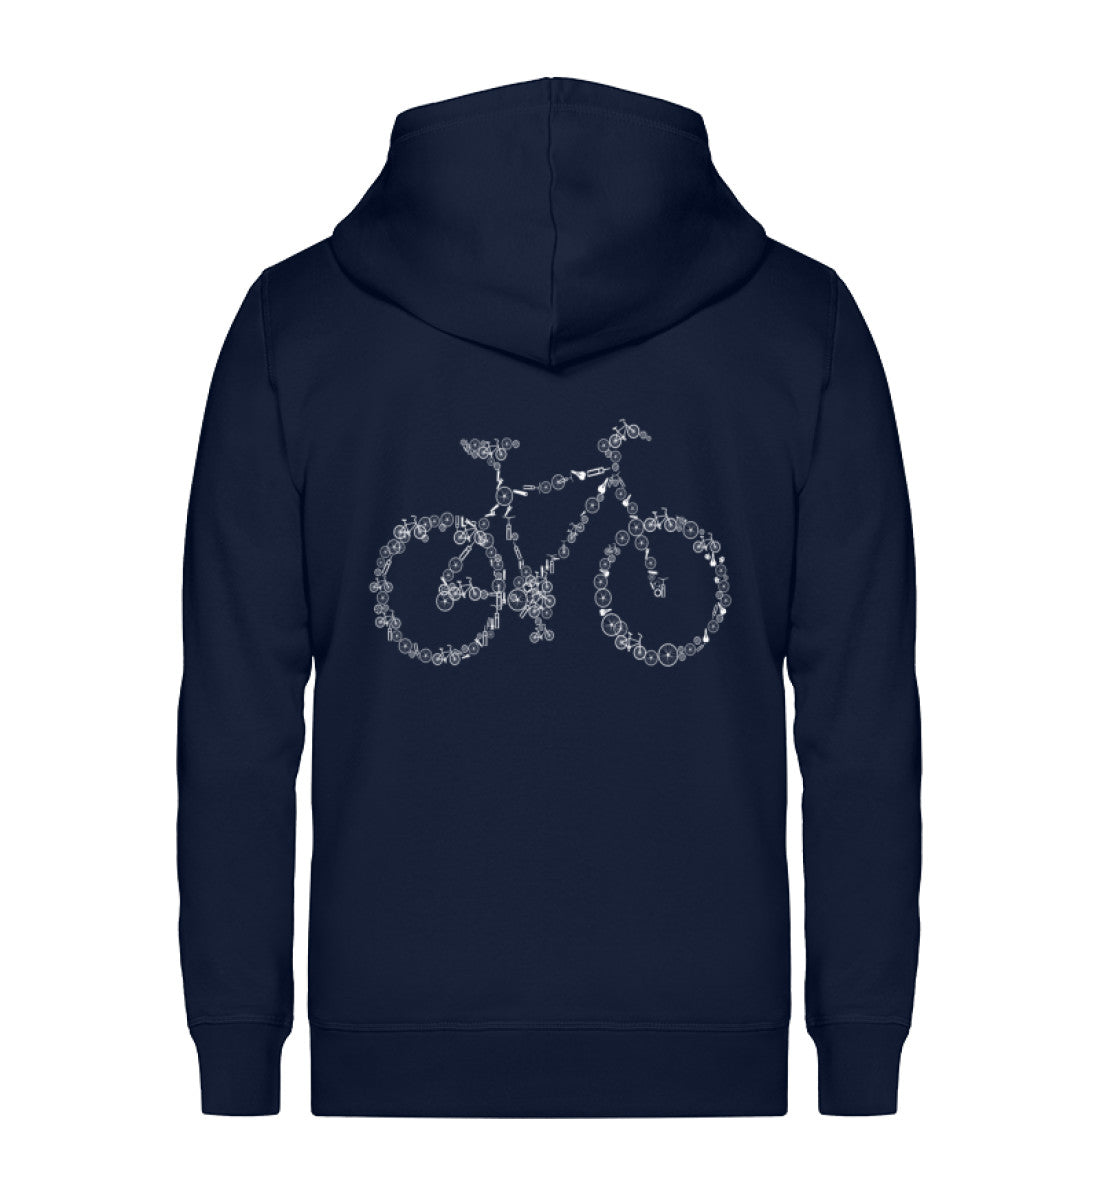 Fahrrad Kollektiv - Unisex Premium Organic Sweatjacke fahrrad mountainbike Navyblau